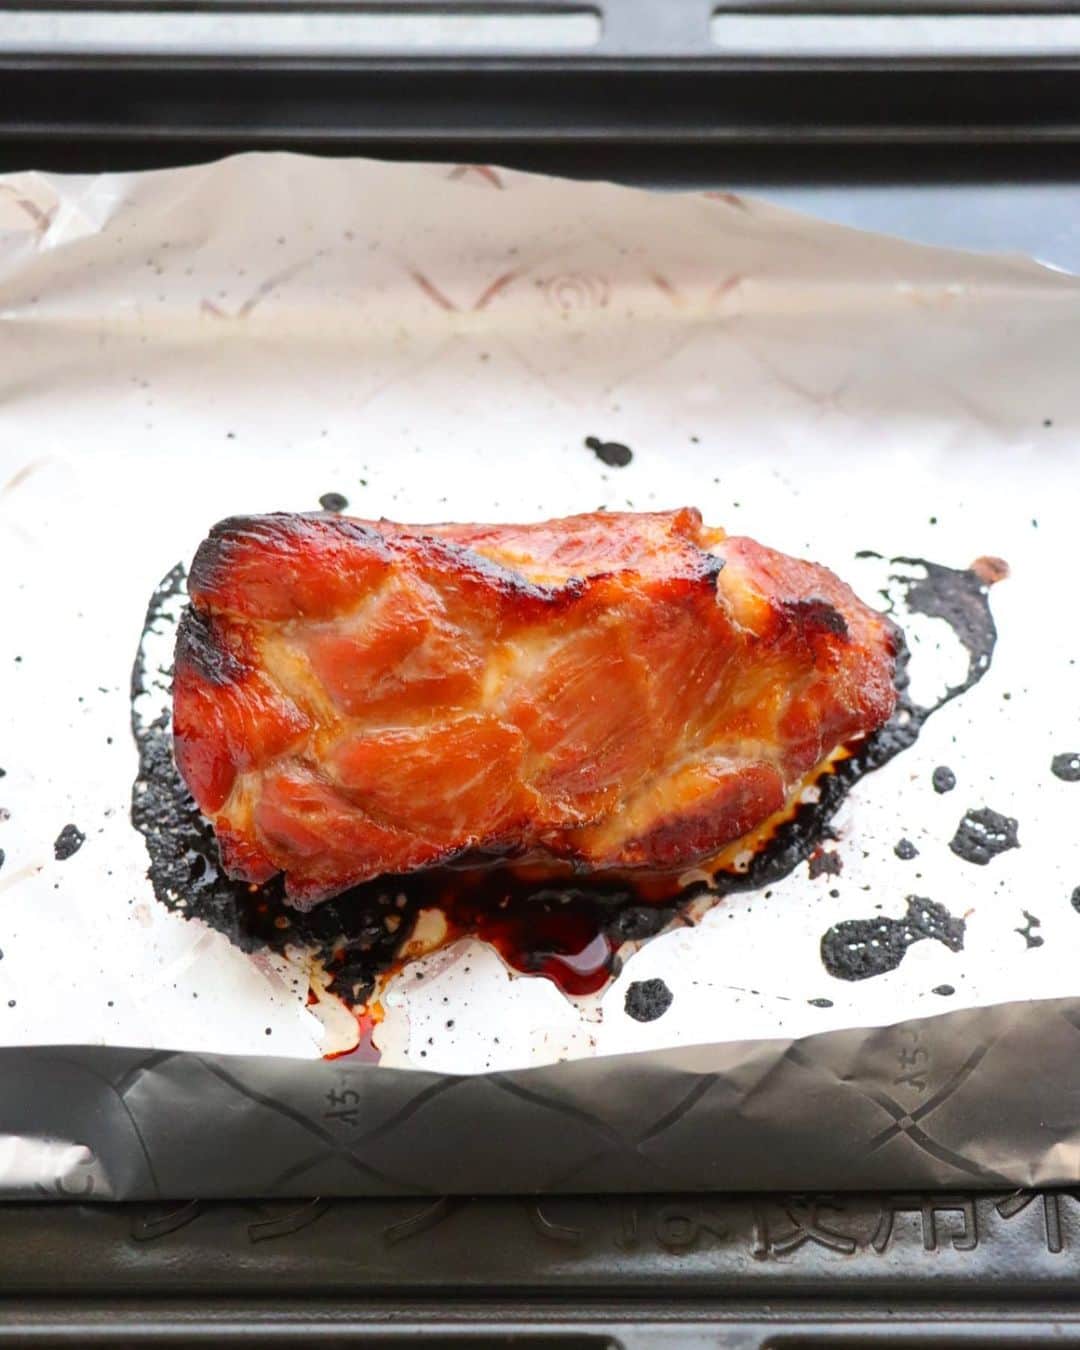 松本有美さんのインスタグラム写真 - (松本有美Instagram)「【レシピ】 ⁡ 漬けて焼くだけ！ はちみつみそ焼豚 —————————————— ⁡ ⁡ こんばんは＾＾ ⁡ ⁡ 今夜のレシピは焼豚です ⁡ ⁡ オーブンで焼く料理って なんだか難しくてハードルが高そうに見えて 実はとっても簡単で楽ちん♪ ⁡ 特に焼豚は下味をつけておいて 食べたい時に焼く！ ⁡ シンプル！！✨ ⁡ ⁡ すぐに食べたい日は フォークで狂ったように穴を開けw ⁡ 安かったから買ってきたけど いたんじゃうから 下味をつけて冷凍保存しておこう ⁡ 数日後疲れたなぁという日に これがあった！過去の私ありがとう🍀 といった感じでよく作ります＾＾ ⁡ ⁡ はちみつ、おみその下味が特にお気に入りです はちみつは柔らかく仕上げてくれて 砂糖とは違って高温で焼いても焦げにくいです とはいえ醤油や味噌の焦げた味わいが とってもおいしいので 程よくまわりを焦がすのがおすすめです＾＾ ⁡ ⁡ ⁡ ⁡ ⁡ はちみつみそ焼豚 ————————— ⁡ 【下味冷凍保存ー約1か月】 【焼上済冷蔵保存ー約1週間】 ⁡ (4人分) 豚肩ロース肉(塊)  400g Aはちみつ　　　　大さじ3 Aみそ　　　　　　大さじ1/2 Aしょう油、酒　　各大さじ2 Aおろしニンニク(チュウブ)  小さじ1 ⁡ ⁡ ⁡ 【作り方】 ⁡ 1 ポリ袋に豚肉、Aを加えてよくもみこみ、空気を抜いて封をとじ、冷蔵庫で6時間〜12時間ほど漬ける。 ⁡ ⁡ 2 オーブンを180度に予熱し、天板にオーブンシートを敷き、1のタレをきって乗せ、35分ほど焼き、食べる際に切り分ける。 (焼き上がり5分前につけだれを表面に塗ると照りがでますよ) ⁡ ⁡ 3 2のタレを小鍋に入れ、水大さじ4を足して弱火にかけ、沸騰してから2〜3分ほど加熱し、お好みで2にかけていただく。 ⁡ ⁡ ⁡ ☑️ポイント ⁡ ◉豚肉は全体にフォークで穴をあけておくと味染みが早くなりますよ。　 ⁡ ◉焼き時間は同じgでも厚み(太さ)があると、焼き時間が長くかかる場合があります。竹串を刺し、透明感のある肉汁が出てくれば火が通った目安になります。濁った白っぽい肉汁が出てきた場合は、5分ずつ追加して焼いて下さいね。 ⁡ ⁡ ◉工程3でタレを煮詰める際、アクは取り除いて下さいね。生肉を漬けていたタレなので、煮詰まらないよう水を足してしっかり加熱して下さいね。 ⁡ ◉焼き上がりを保存する際は、切らずにタレを上からかけ、密閉して冷蔵保存して下さいね。焼き上がりを冷凍保存する場合は、保存袋に入れて、なるべく空気を抜き約3か月冷凍保存可能です。解凍して召し上がって下さいね。 ⁡ ⁡ 　 ⁡ ⁡ ⁡ ☕️threads はじめてみました☕️ ———————————————— ⁡ 普段のごはんやスイーツ、日常などいろいろ写真と共にリアル日常を綴ってます ⁡ https://www.threads.net/@yu_mama_cafe ※ハイライトからお気軽に♪＾＾ ⁡ ⁡ ⁡ ⁡ ⁡ ⁡ 🍩ドーナツ専門店&オンラインshop🍰 ———————————————————- ⁡ @one_for_two_yuumama ⁡ ⁡ ⁡ ⁡ ⁡ ⢀⢀⢄⁎❄︎⁎⢄⢀༶⁎❄︎⢀⢄⢀⢀༶⁎❄︎⢀⢀⢀ ⁡ 🌸\\新刊が発売になりました//🌸 ⁡  ゆーママの簡単！　 　　　節約レンチンごはん  -——————————————— 　　ほぼコンテナに入れるだけ！ 　　　　(冷凍つくりおき) ⁡ \分かりやすい重ね順イラストも掲載/ ⁡ ⁡ ⁡ ____________________________________ 料理研究家#松本ゆうみ#ゆーママ#時短レシピ#かんたんレシピ#節約レシピ＃アルモンデ#野菜レシピ#サラダ#焼豚#下味冷凍#冷凍つくりおき#豚肉レシピ#オーブン#焼豚レシピ#みそ#はちみつ」8月29日 21時02分 - yu_mama_cafe